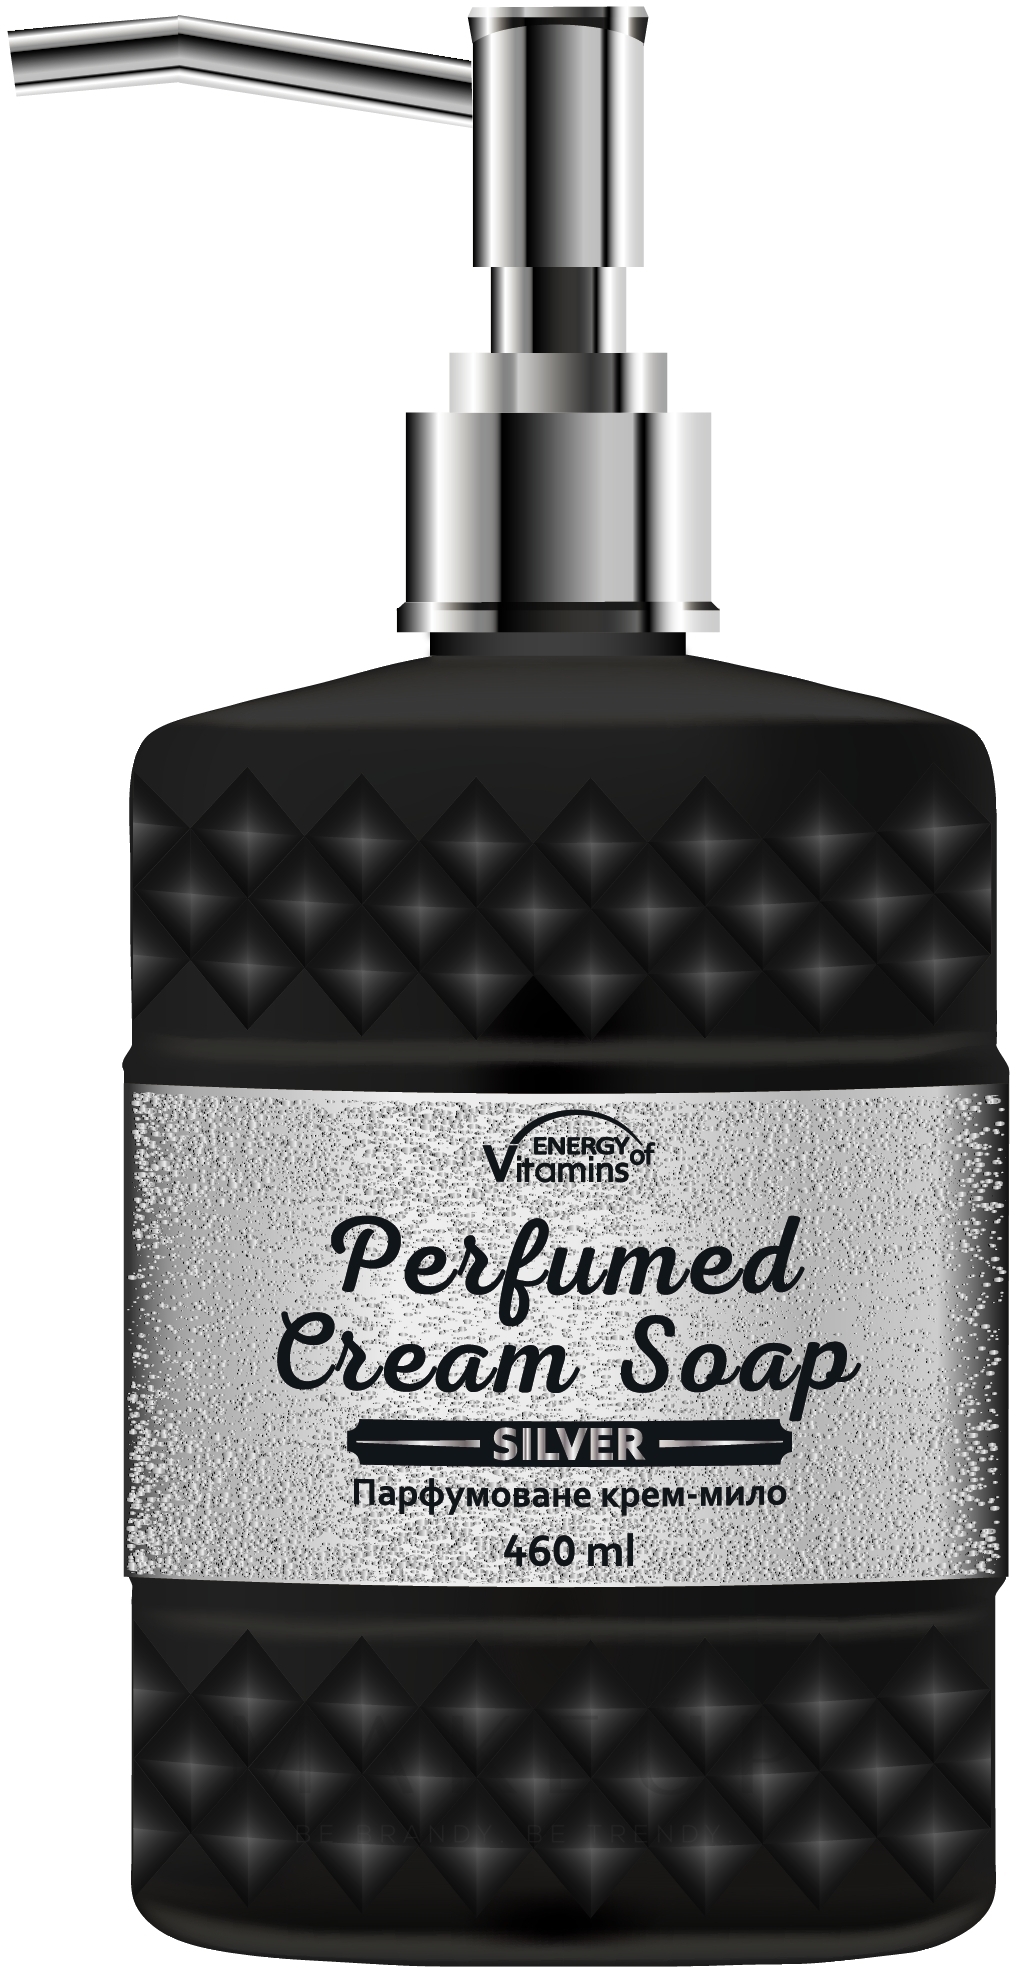 Parfümierte Creme-Seife für den Körper Silver - Energy of Vitamins Perfumed Cream Soap — Bild 460 ml